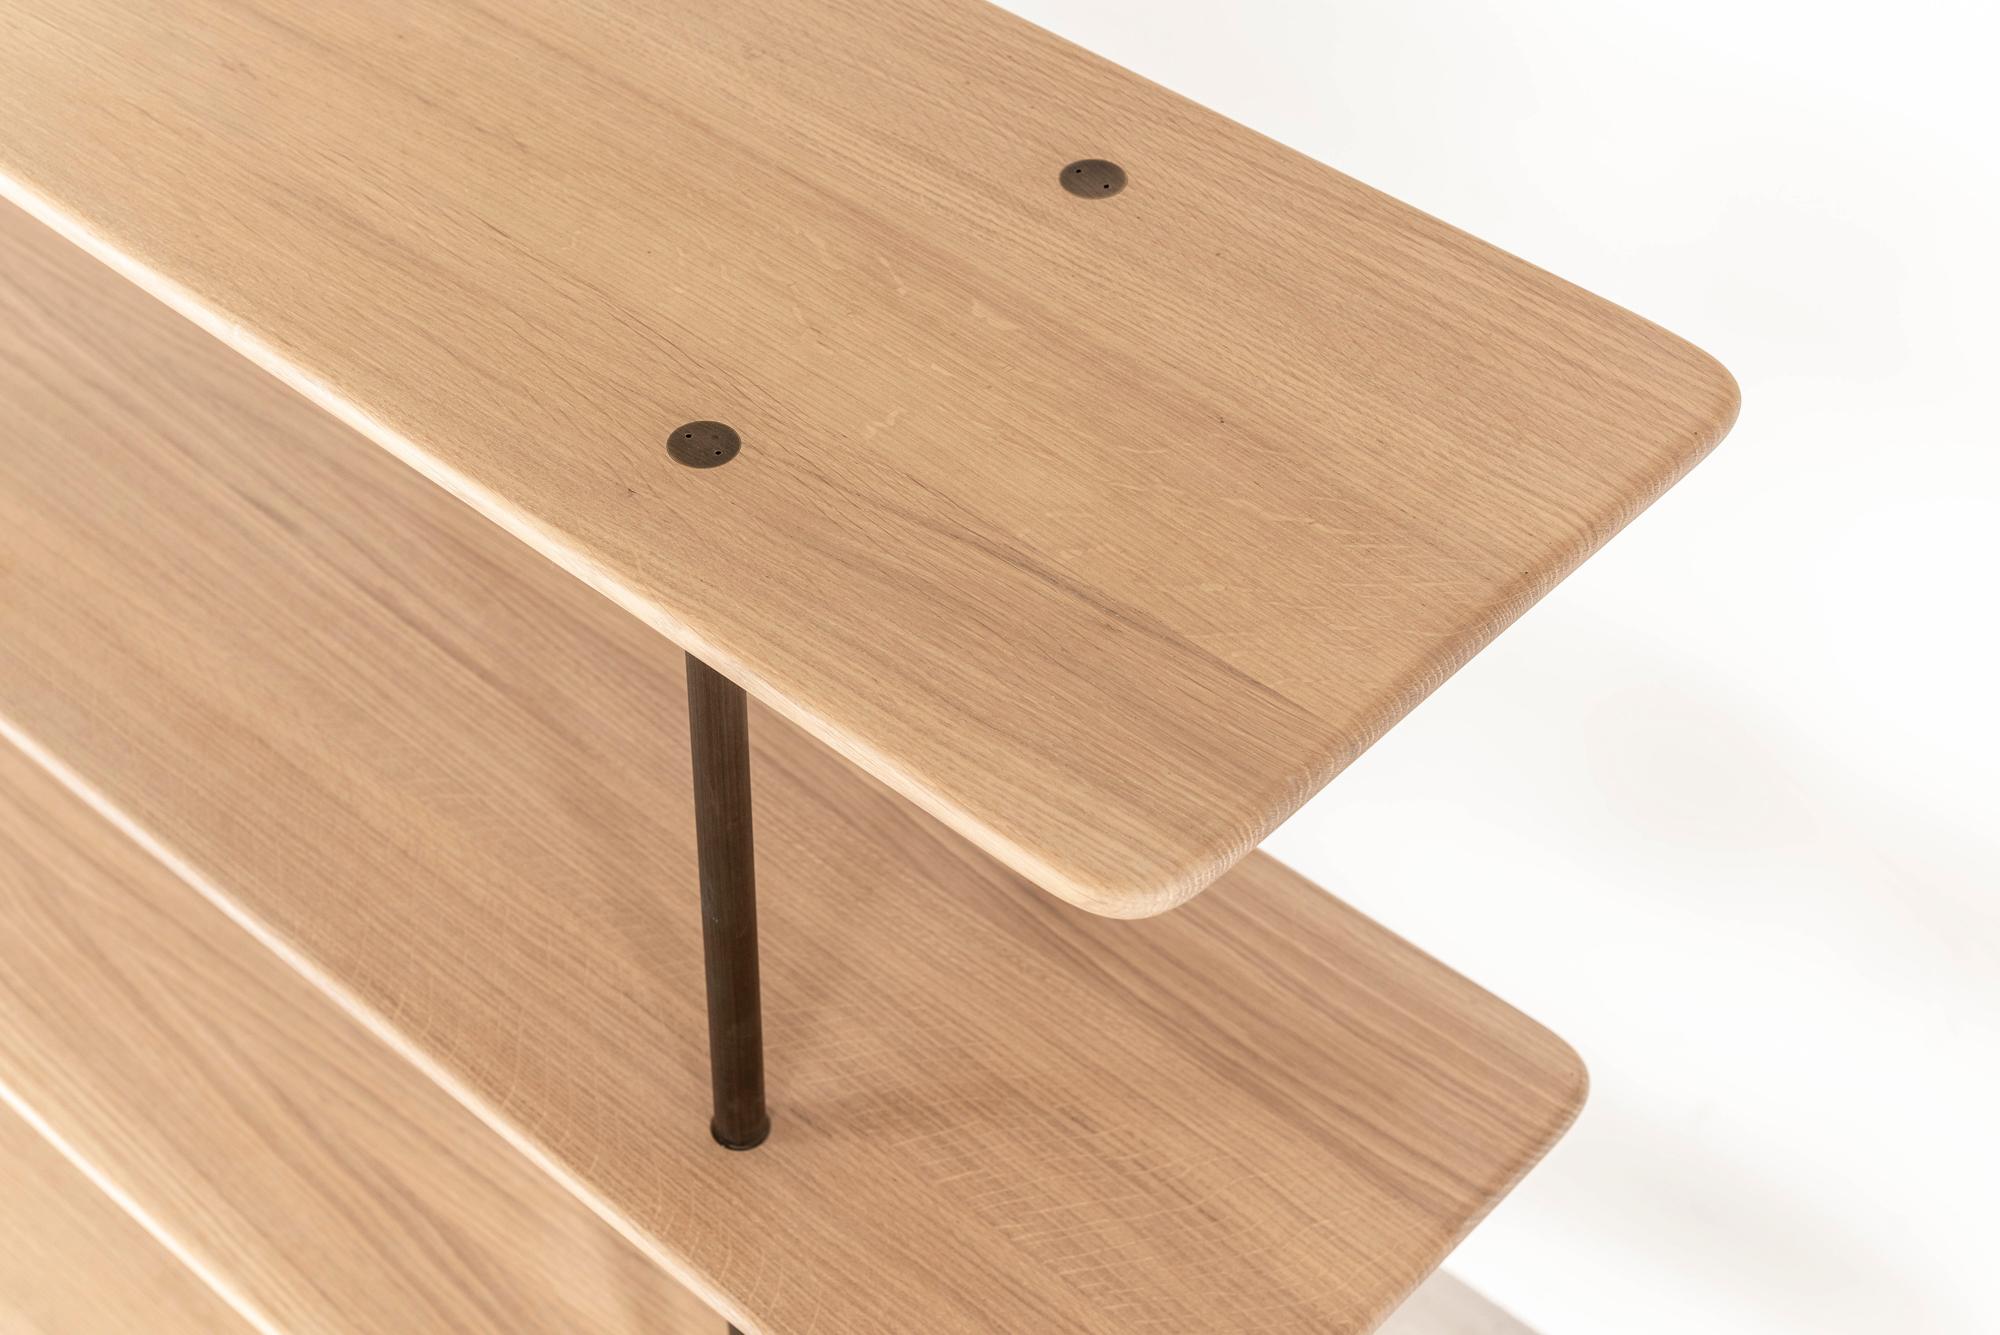 Die weiche Geometrie macht dieses Möbelstück mit fünf Regalen des englischen Herstellers Benchmark zu einem einzigartigen und außergewöhnlichen Stück. 

Das aus Eichenholz gefertigte Exemplar mit massivem:: gedrechseltem Messingrahmen und